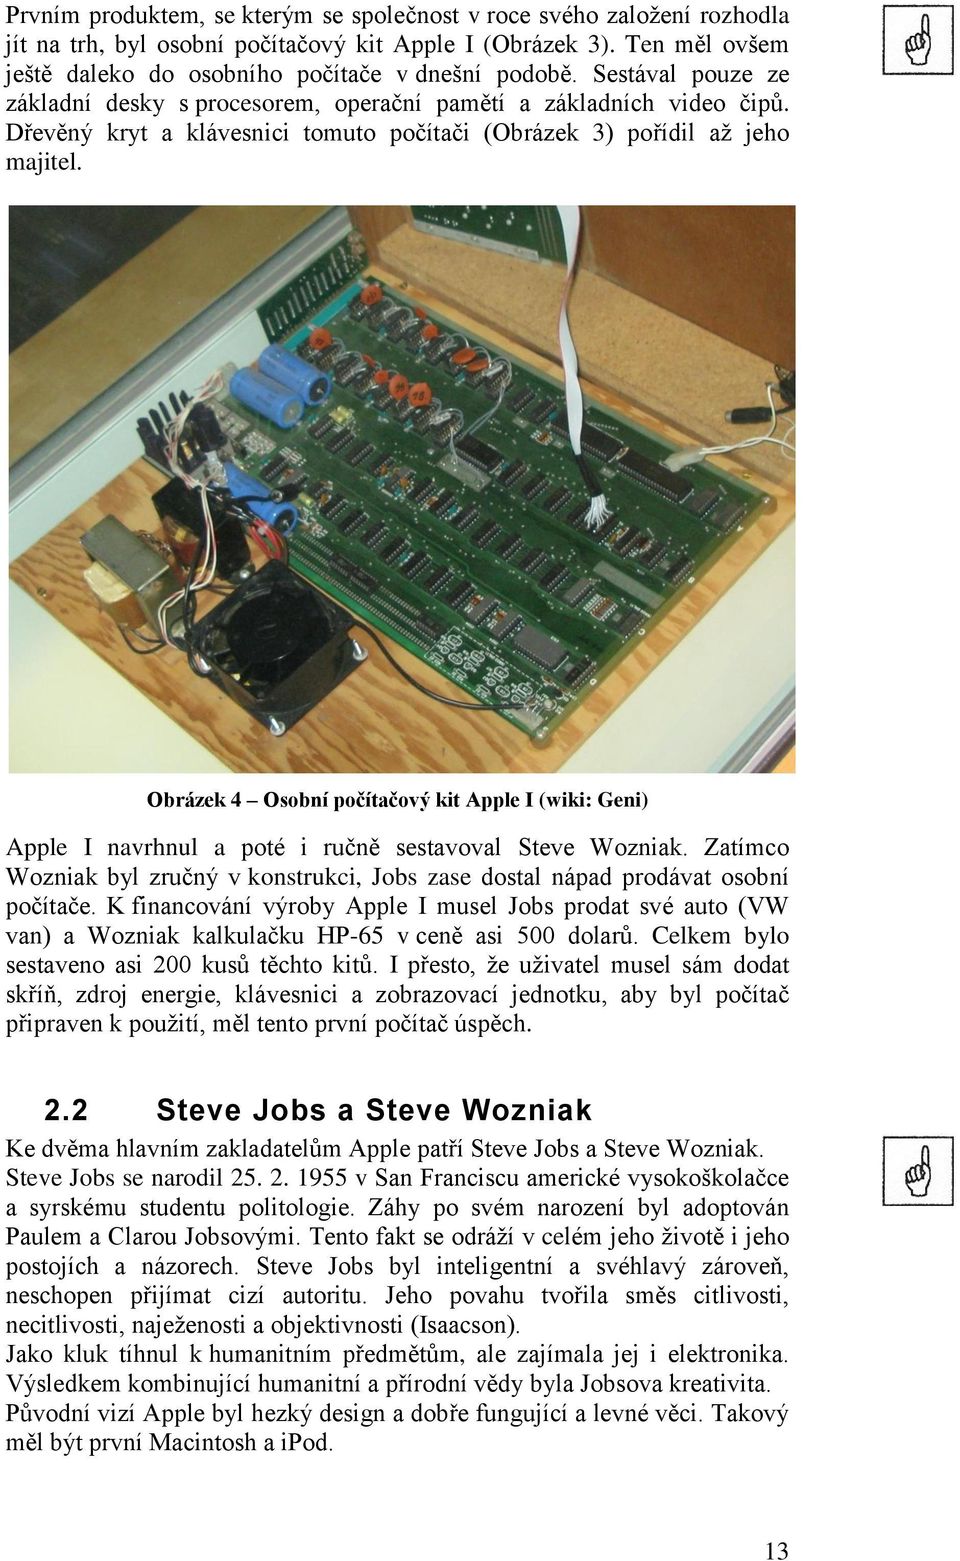 Obrázek 4 Osobní počítačový kit Apple I (wiki: Geni) Apple I navrhnul a poté i ručně sestavoval Steve Wozniak. Zatímco Wozniak byl zručný v konstrukci, Jobs zase dostal nápad prodávat osobní počítače.